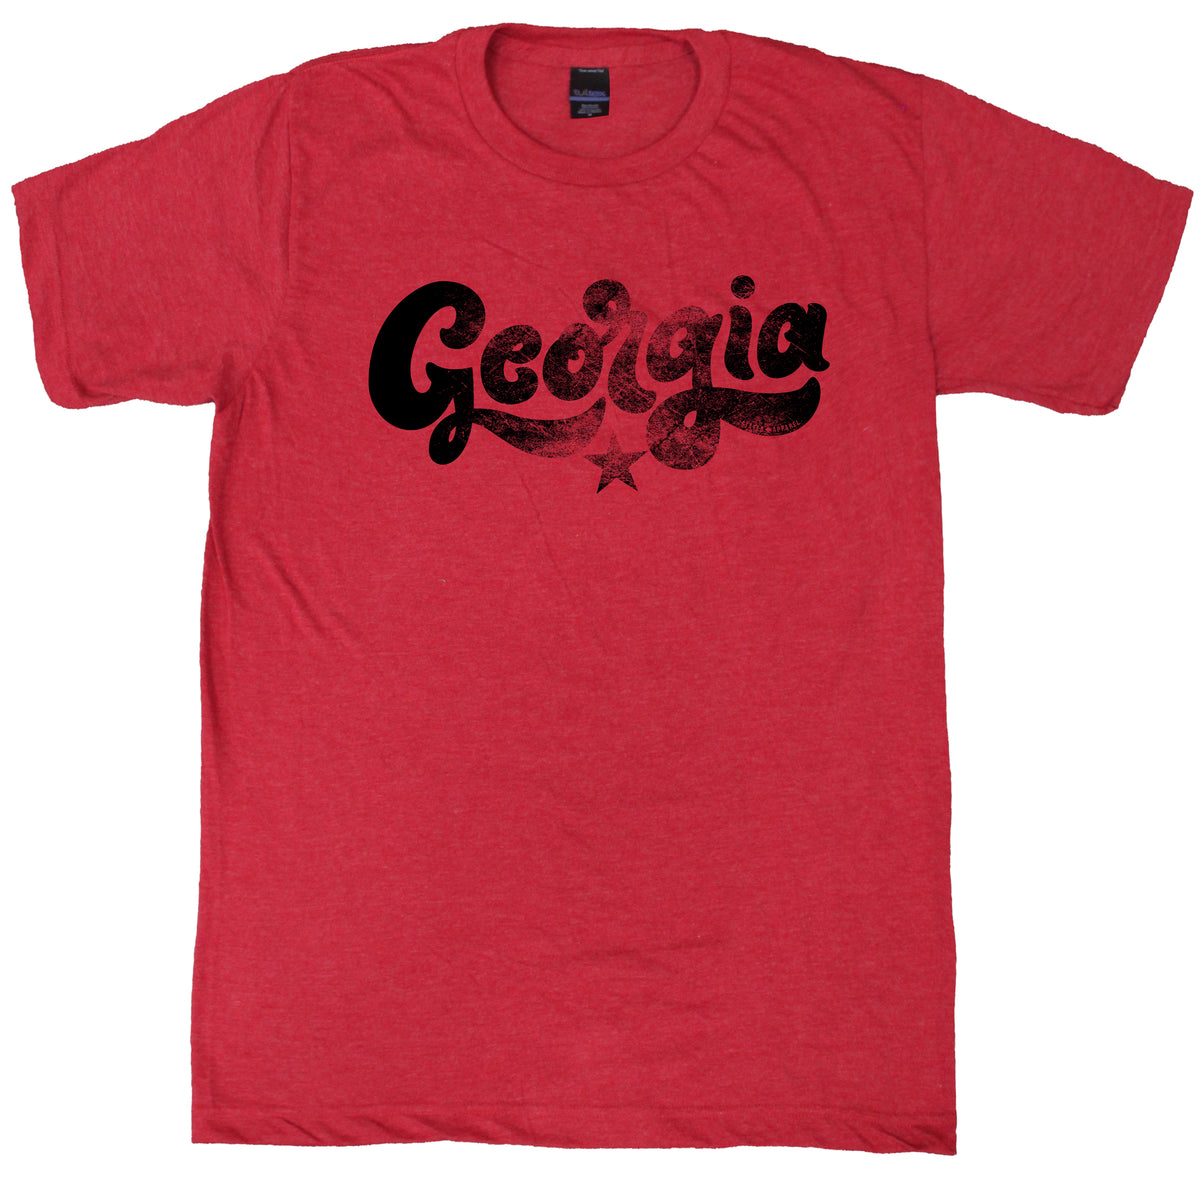 Georgia 70's T-Shirt